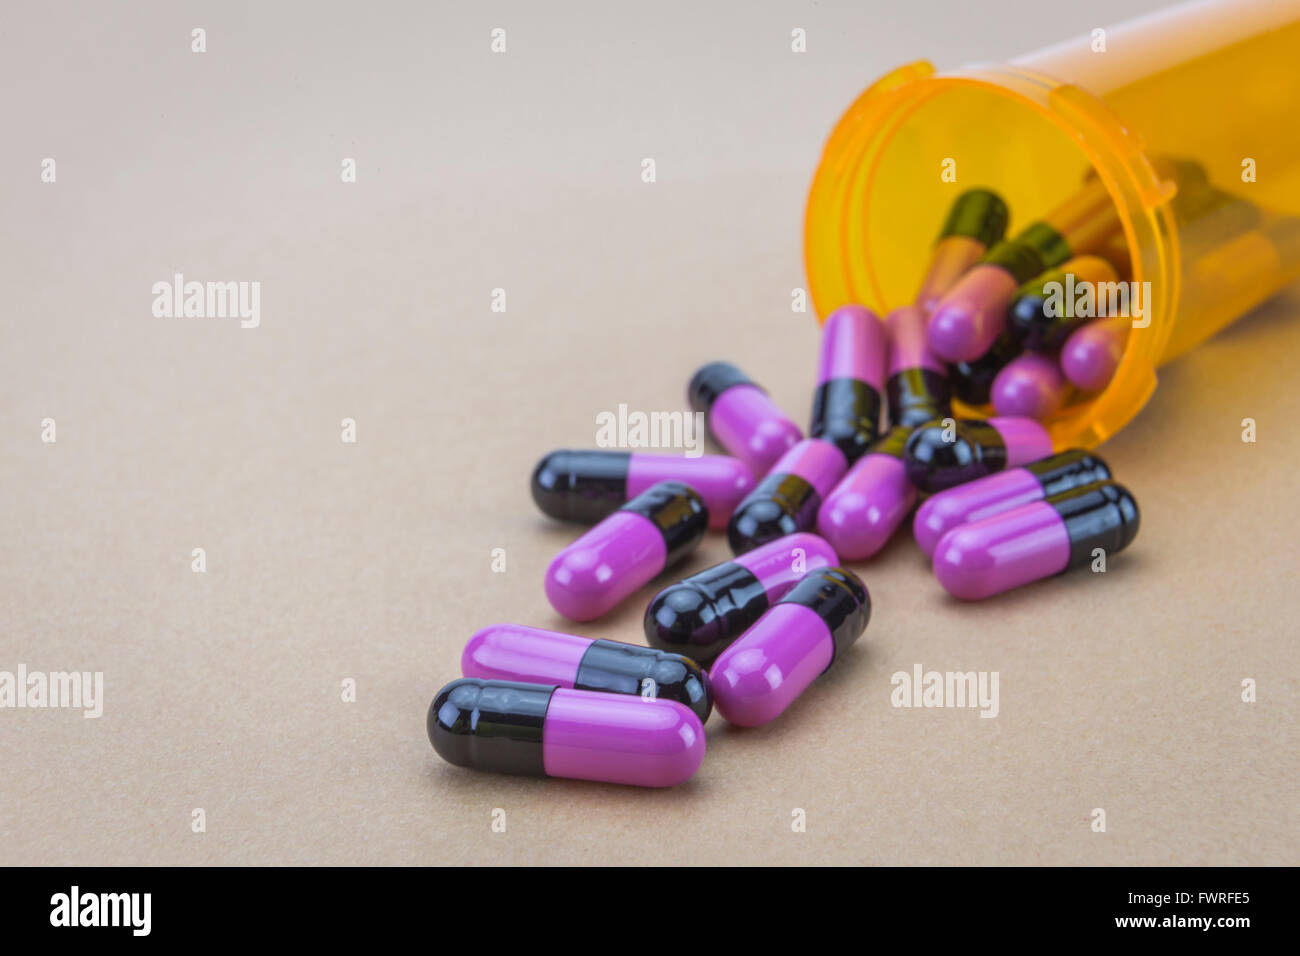 Pills spilling from an open bottle Stock Photo